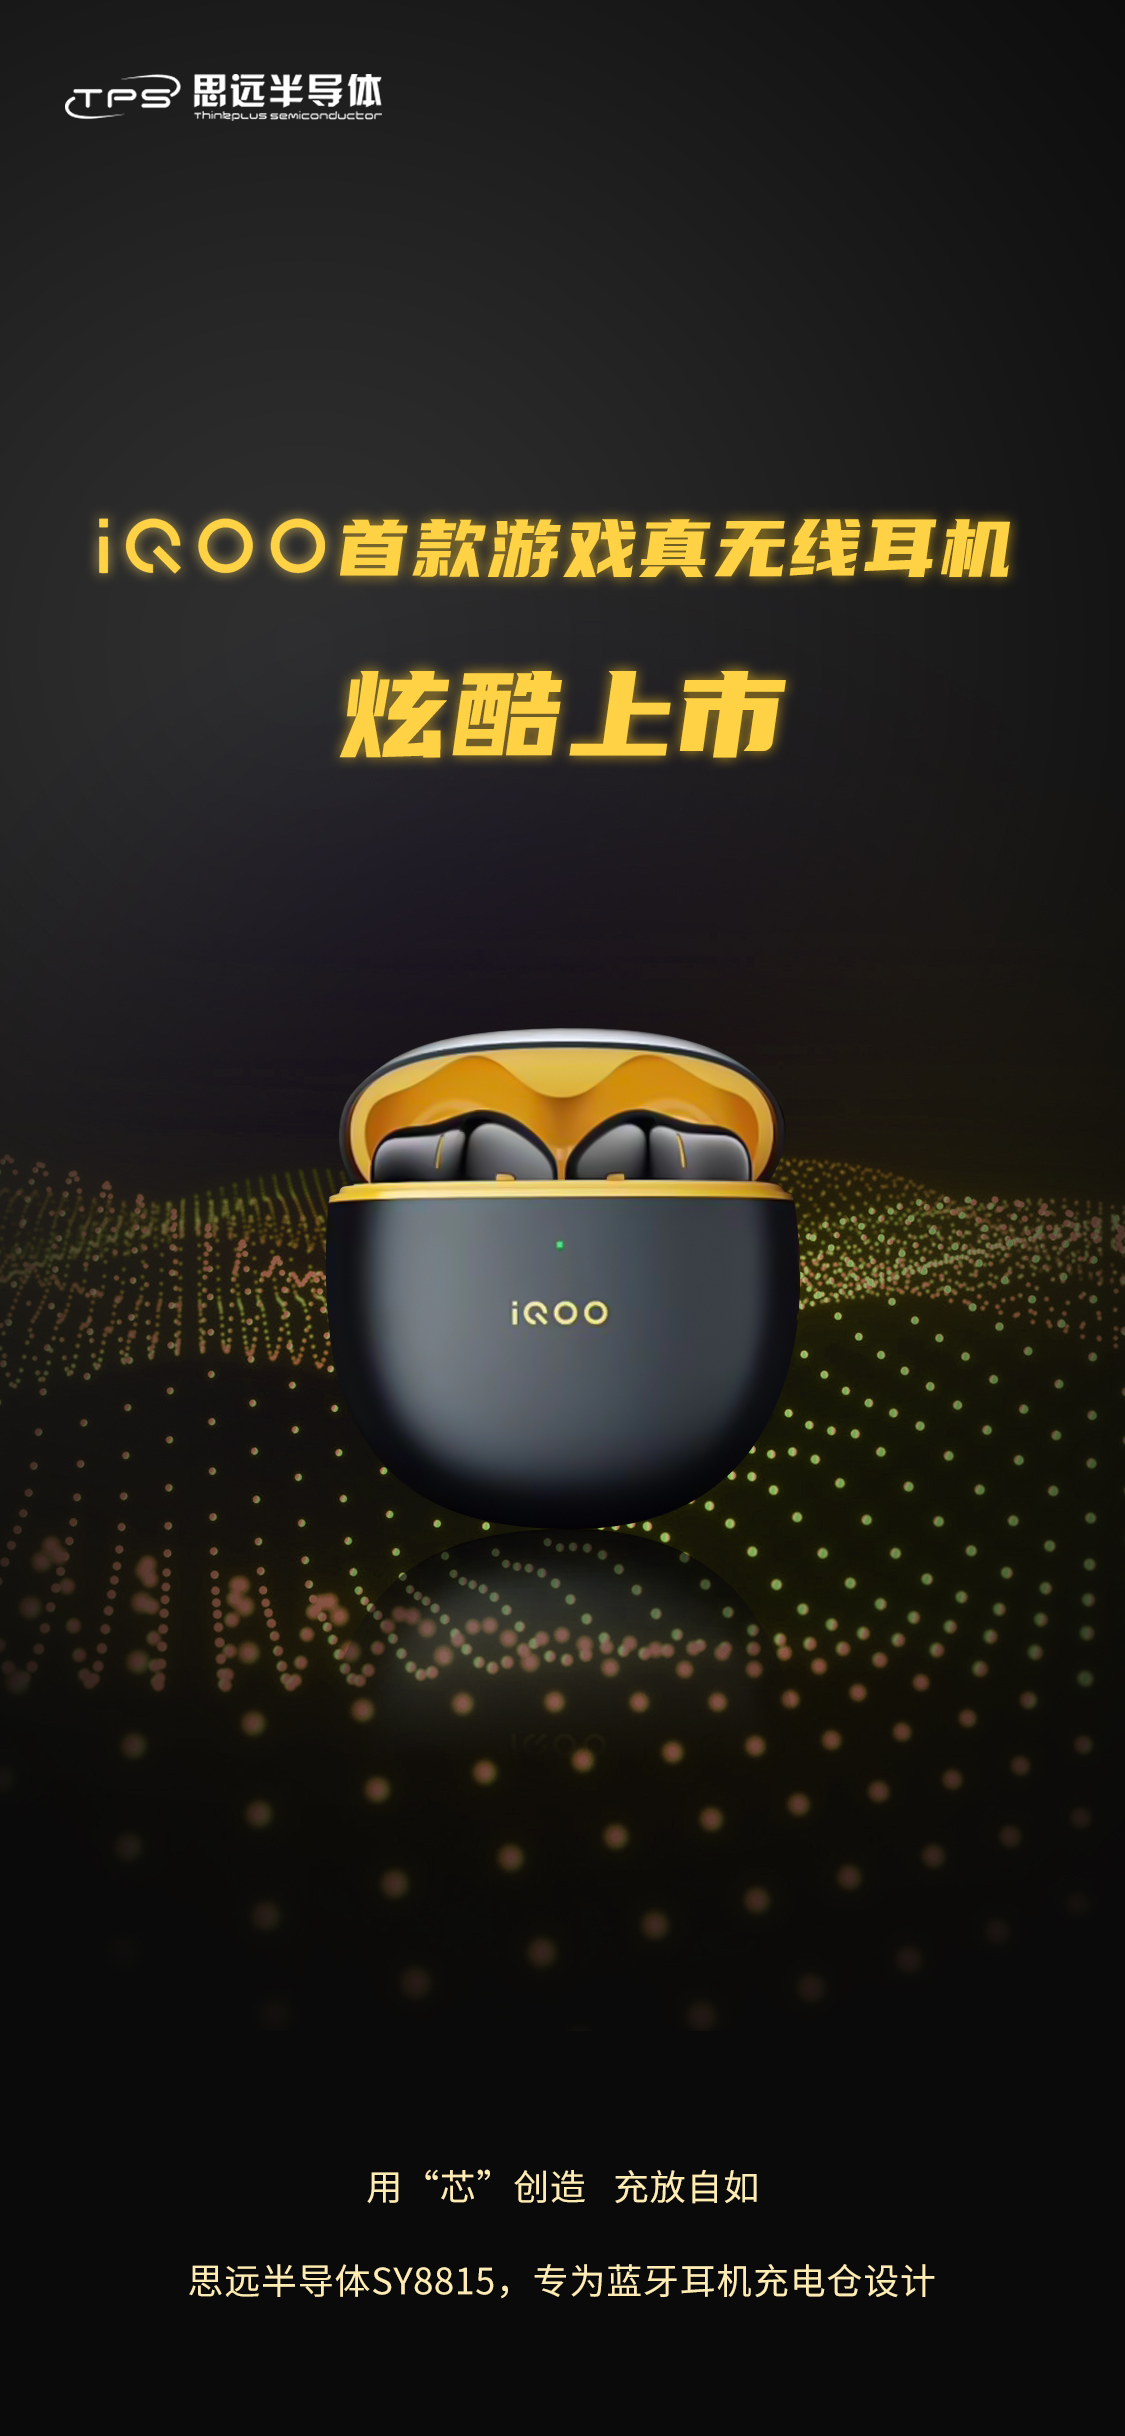 商用丨祝贺iQOO首款游戏真无线耳机发布 采用思远半导体充电仓电源管理芯片